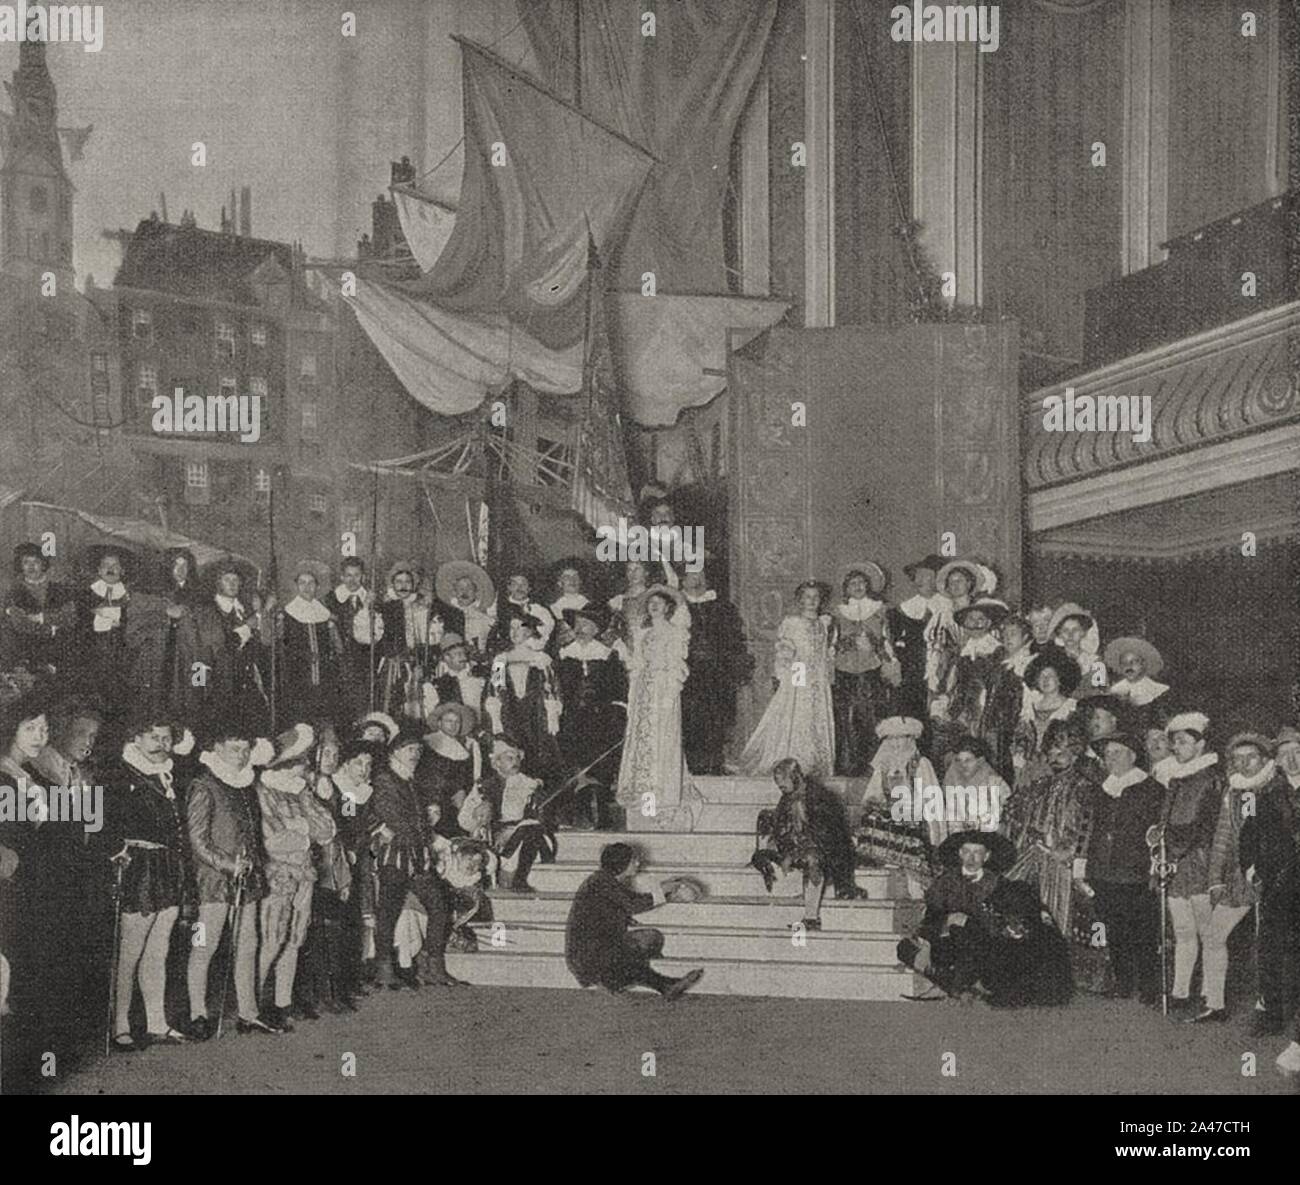 Festspiel ‥9EHollands Blütezeit’ der Düsseldorfer Malkasten-Redoute 1912. Bühnenbild mit Stadtbild Amsterdam von Georg Hacker. Stock Photo